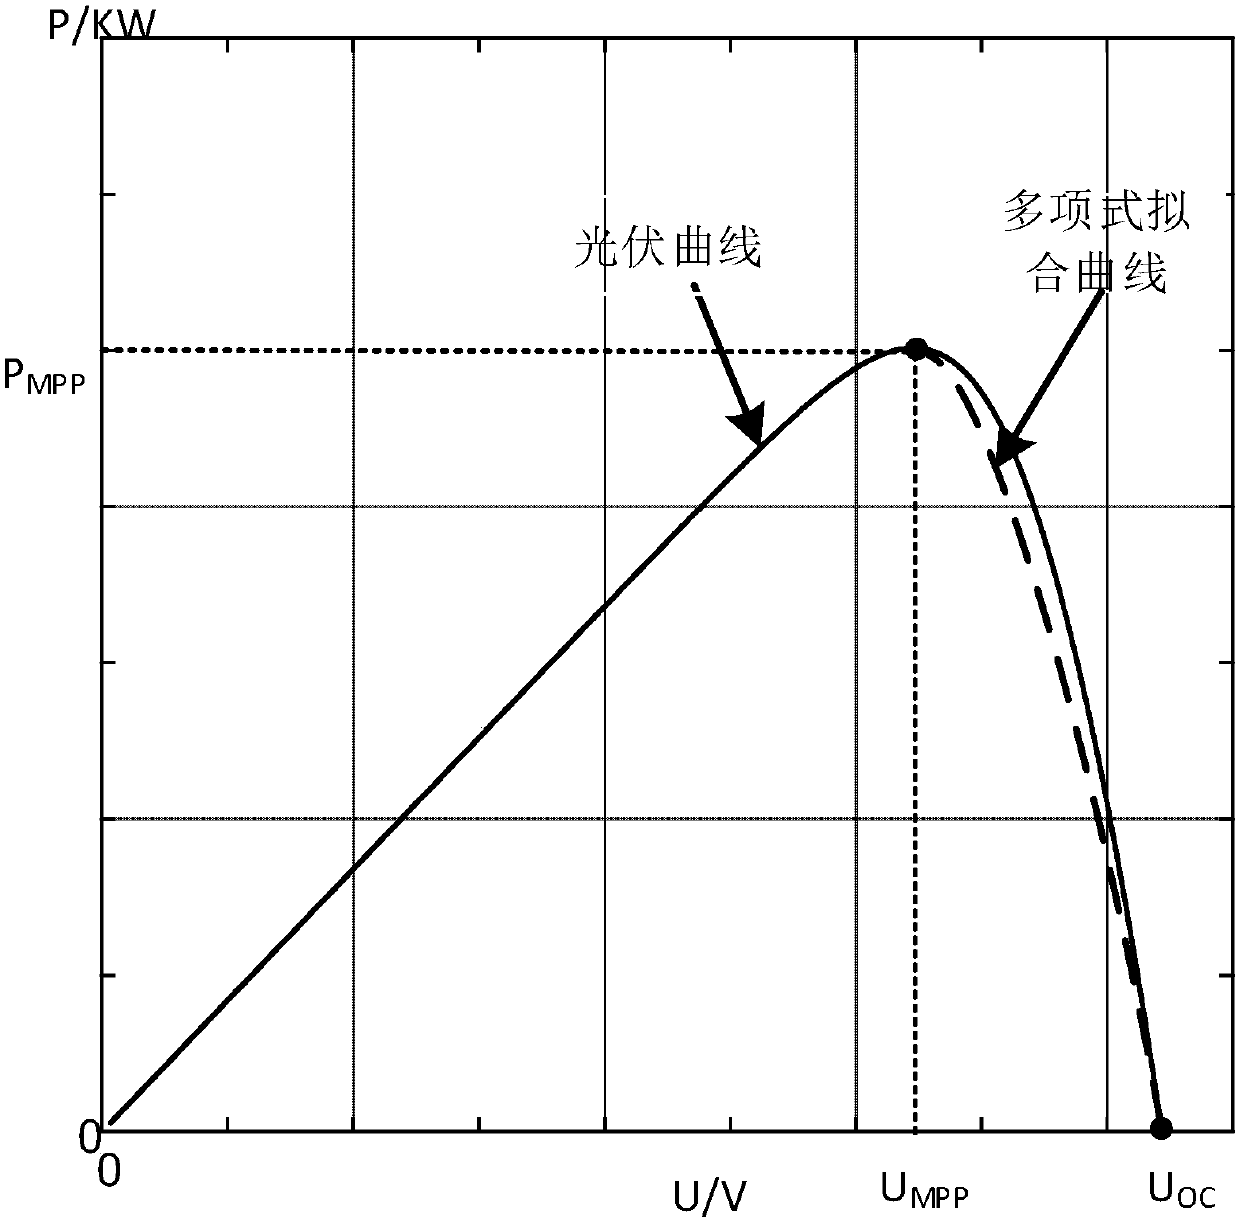 Lagrange interpolation forecast-based photovoltaic virtual synchronous control method